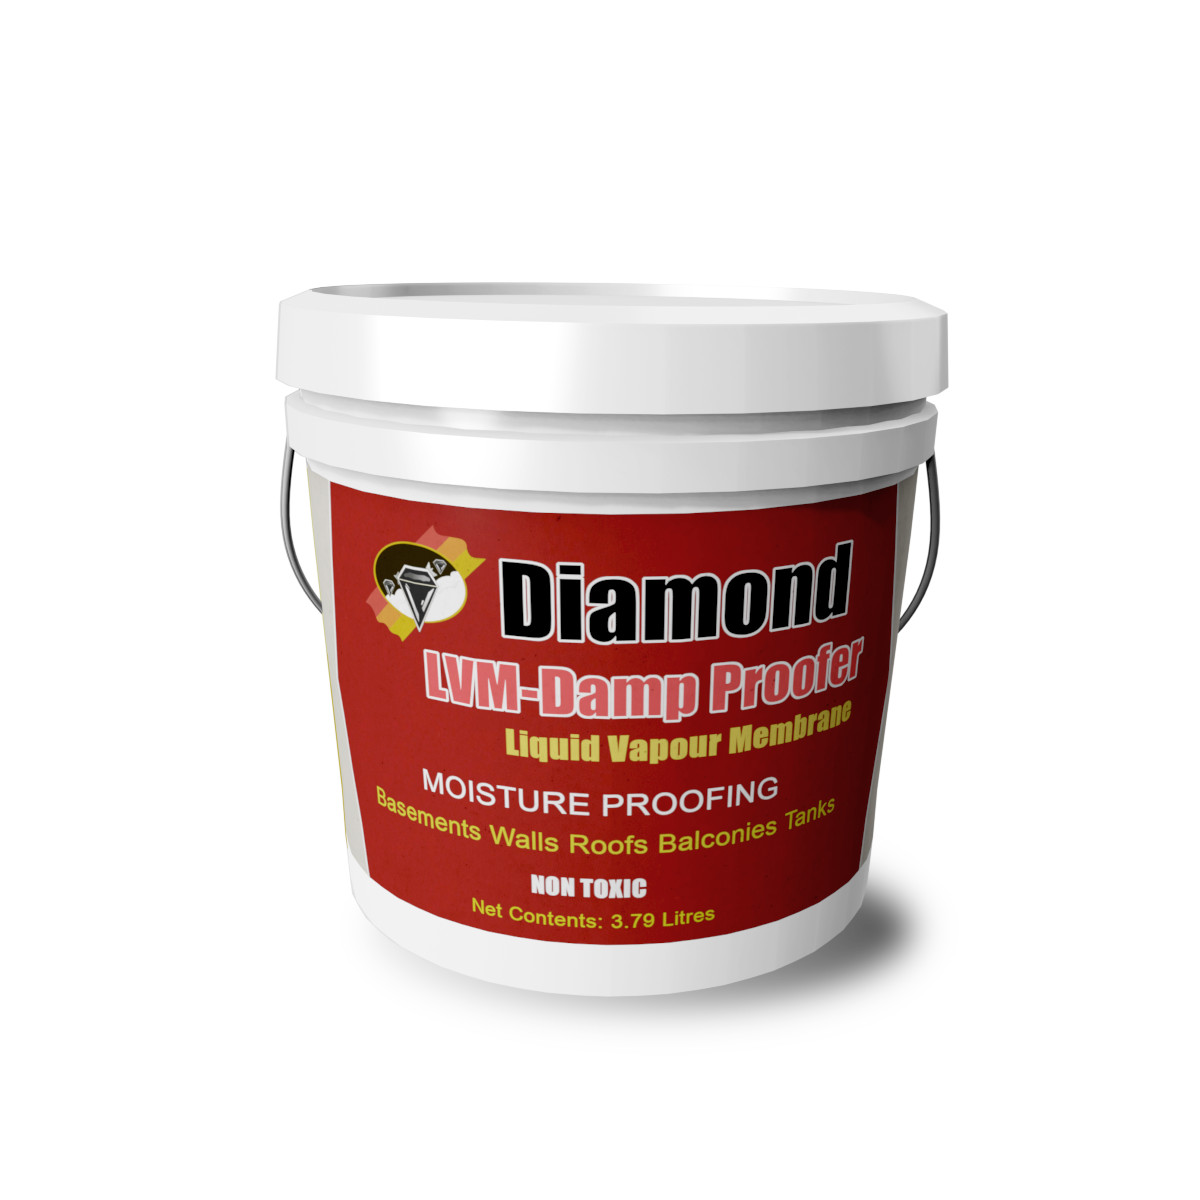 Diamond Liquid Vapour Membrane